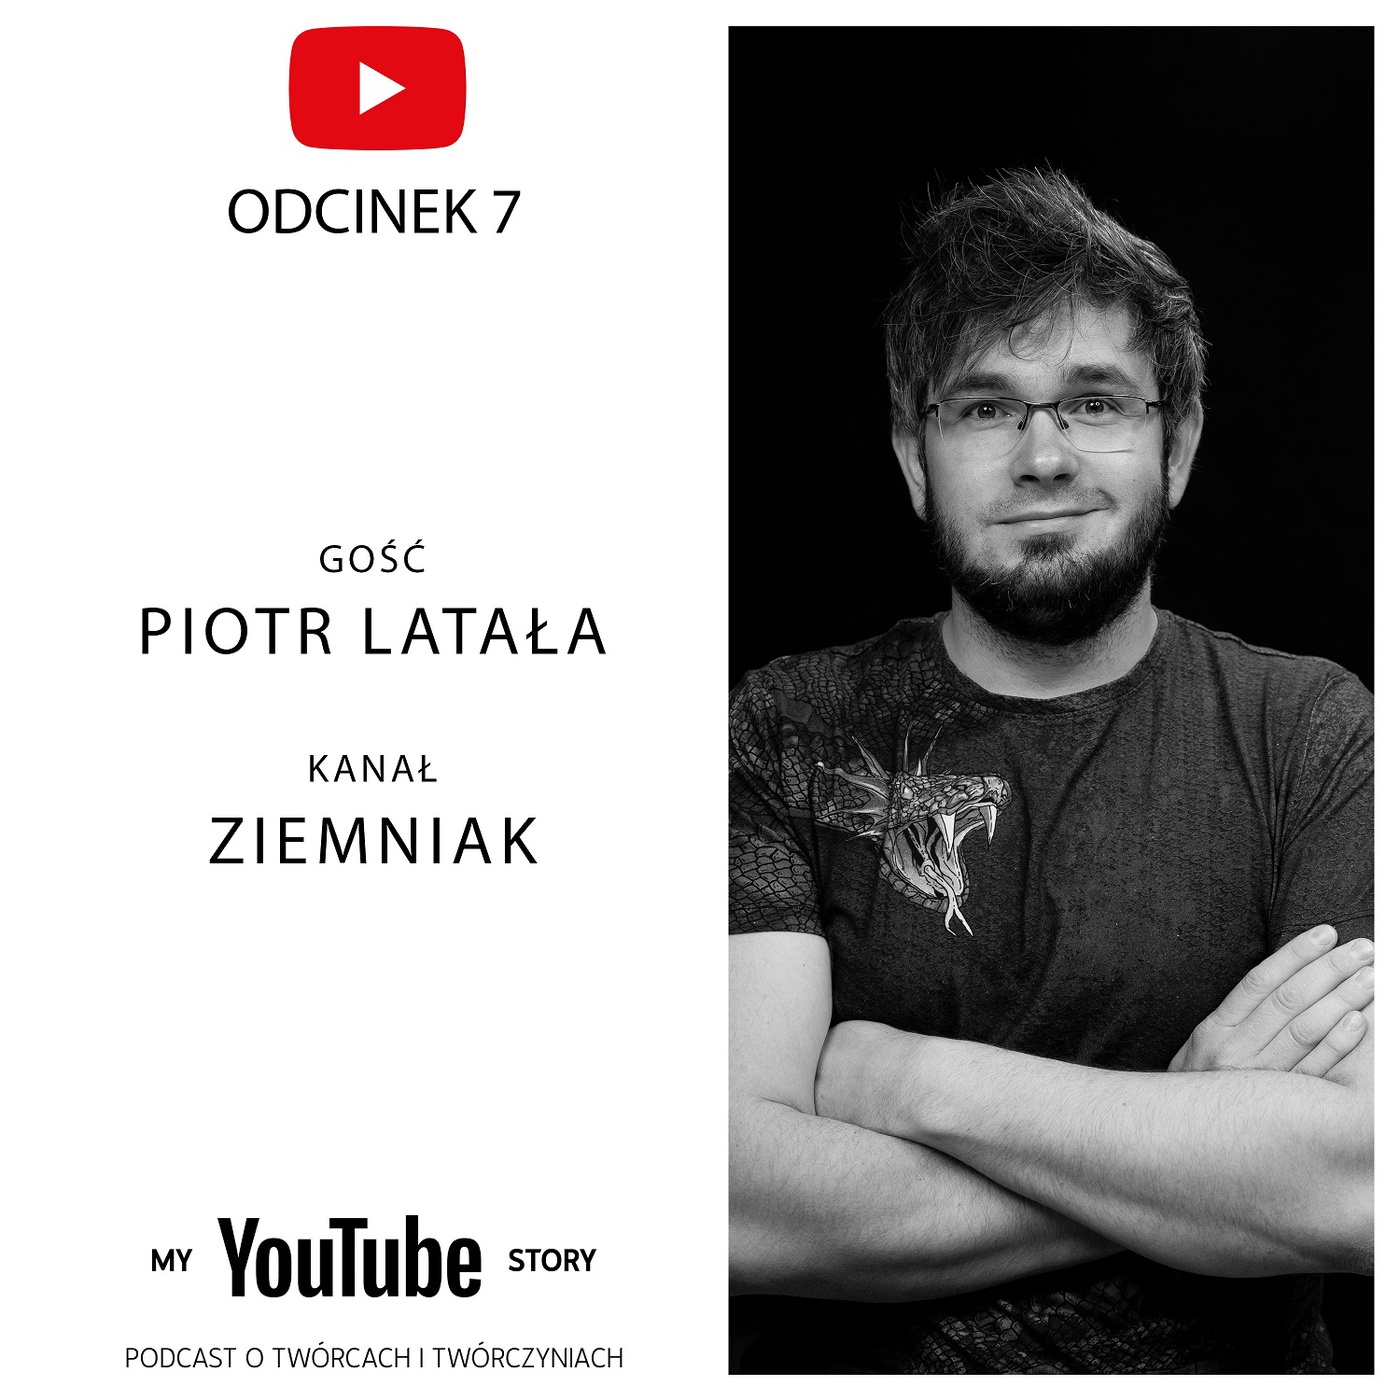 #7 My YouTube Story - Piotr Latała | Ziemniak, jesteś fajnym człowiekiem